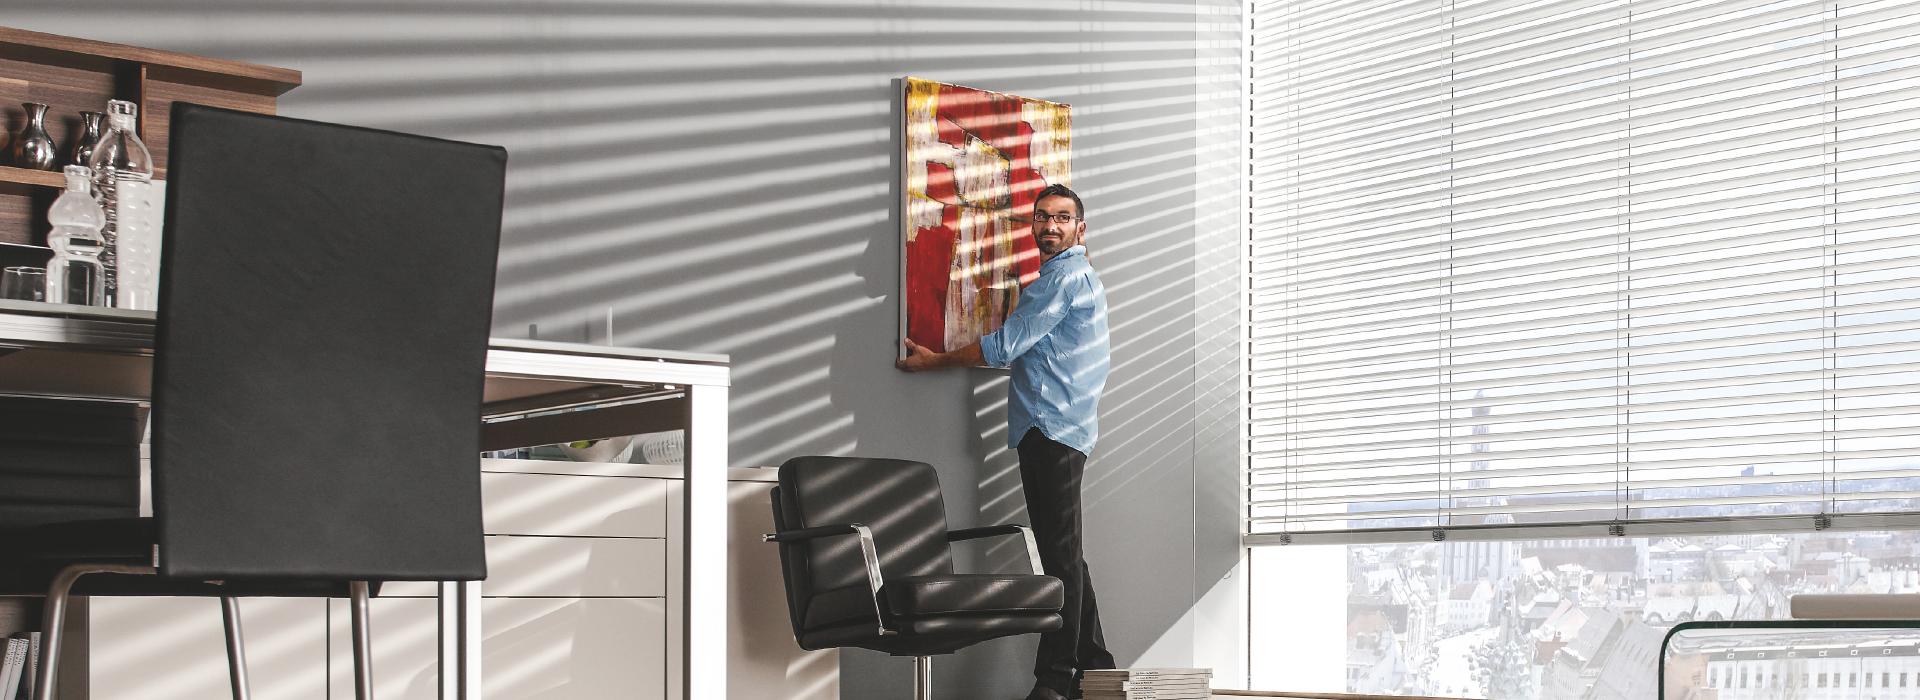 Mann hängt Gemälde in Büro auf, Raffstoren sind gekippt